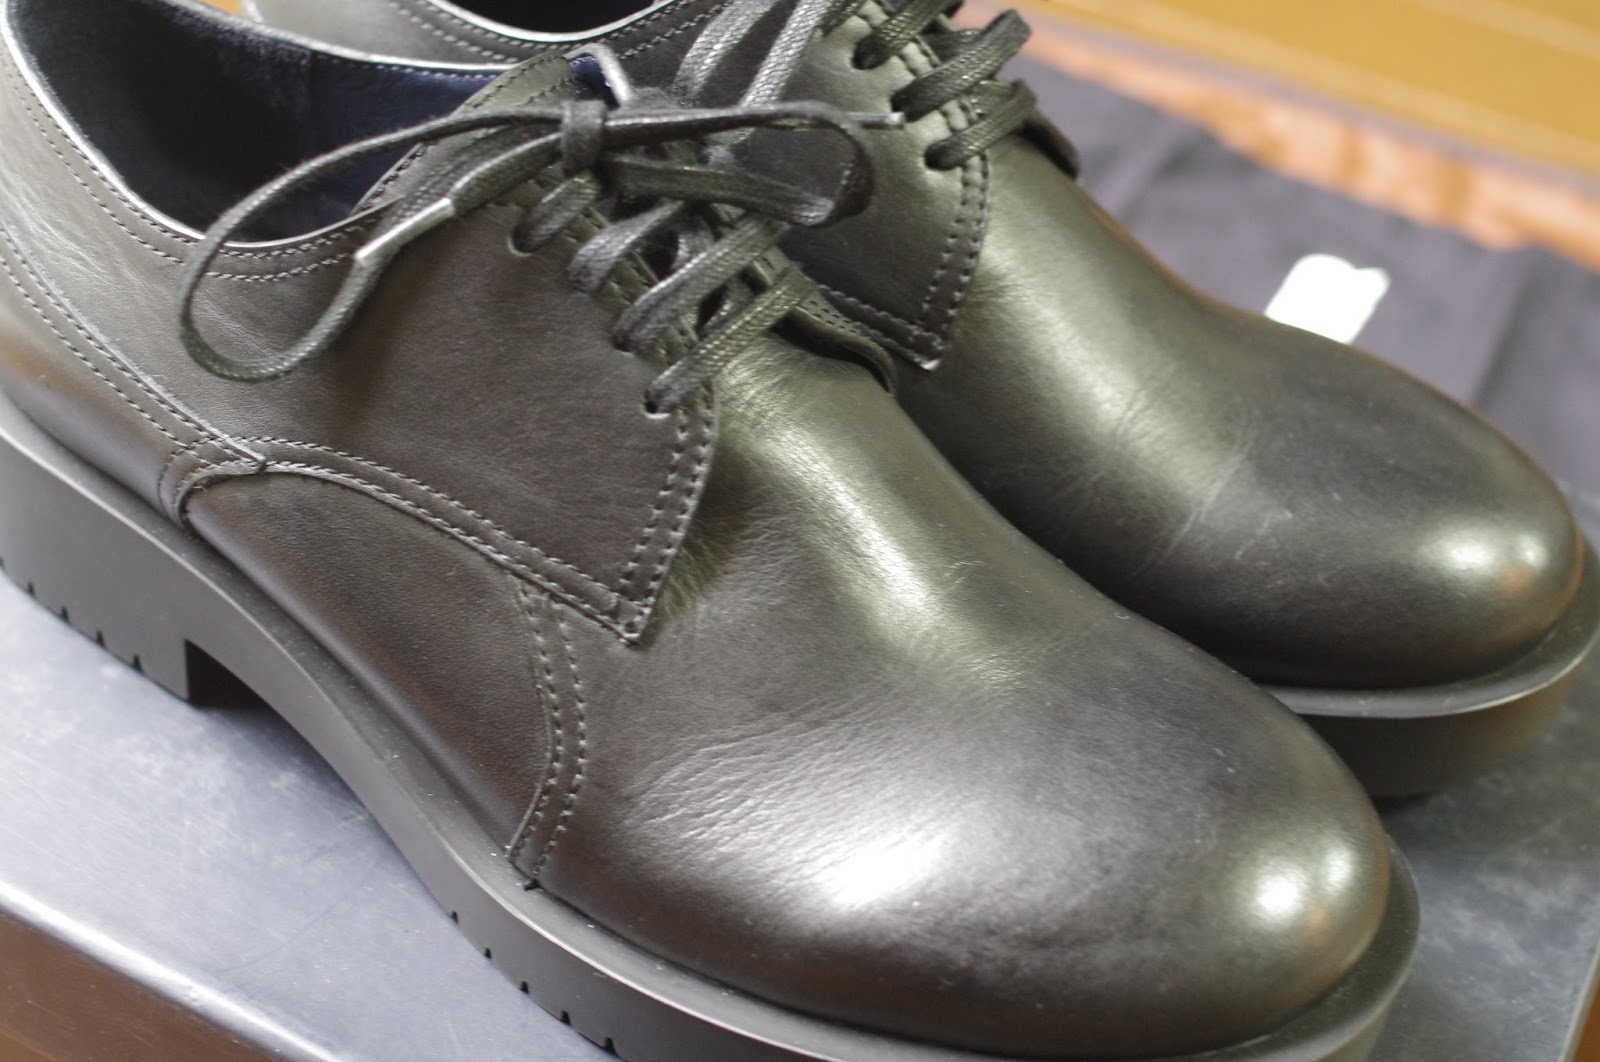 ひっそり紳士の嗜み: JIL SANDER NAVYの革靴を購入